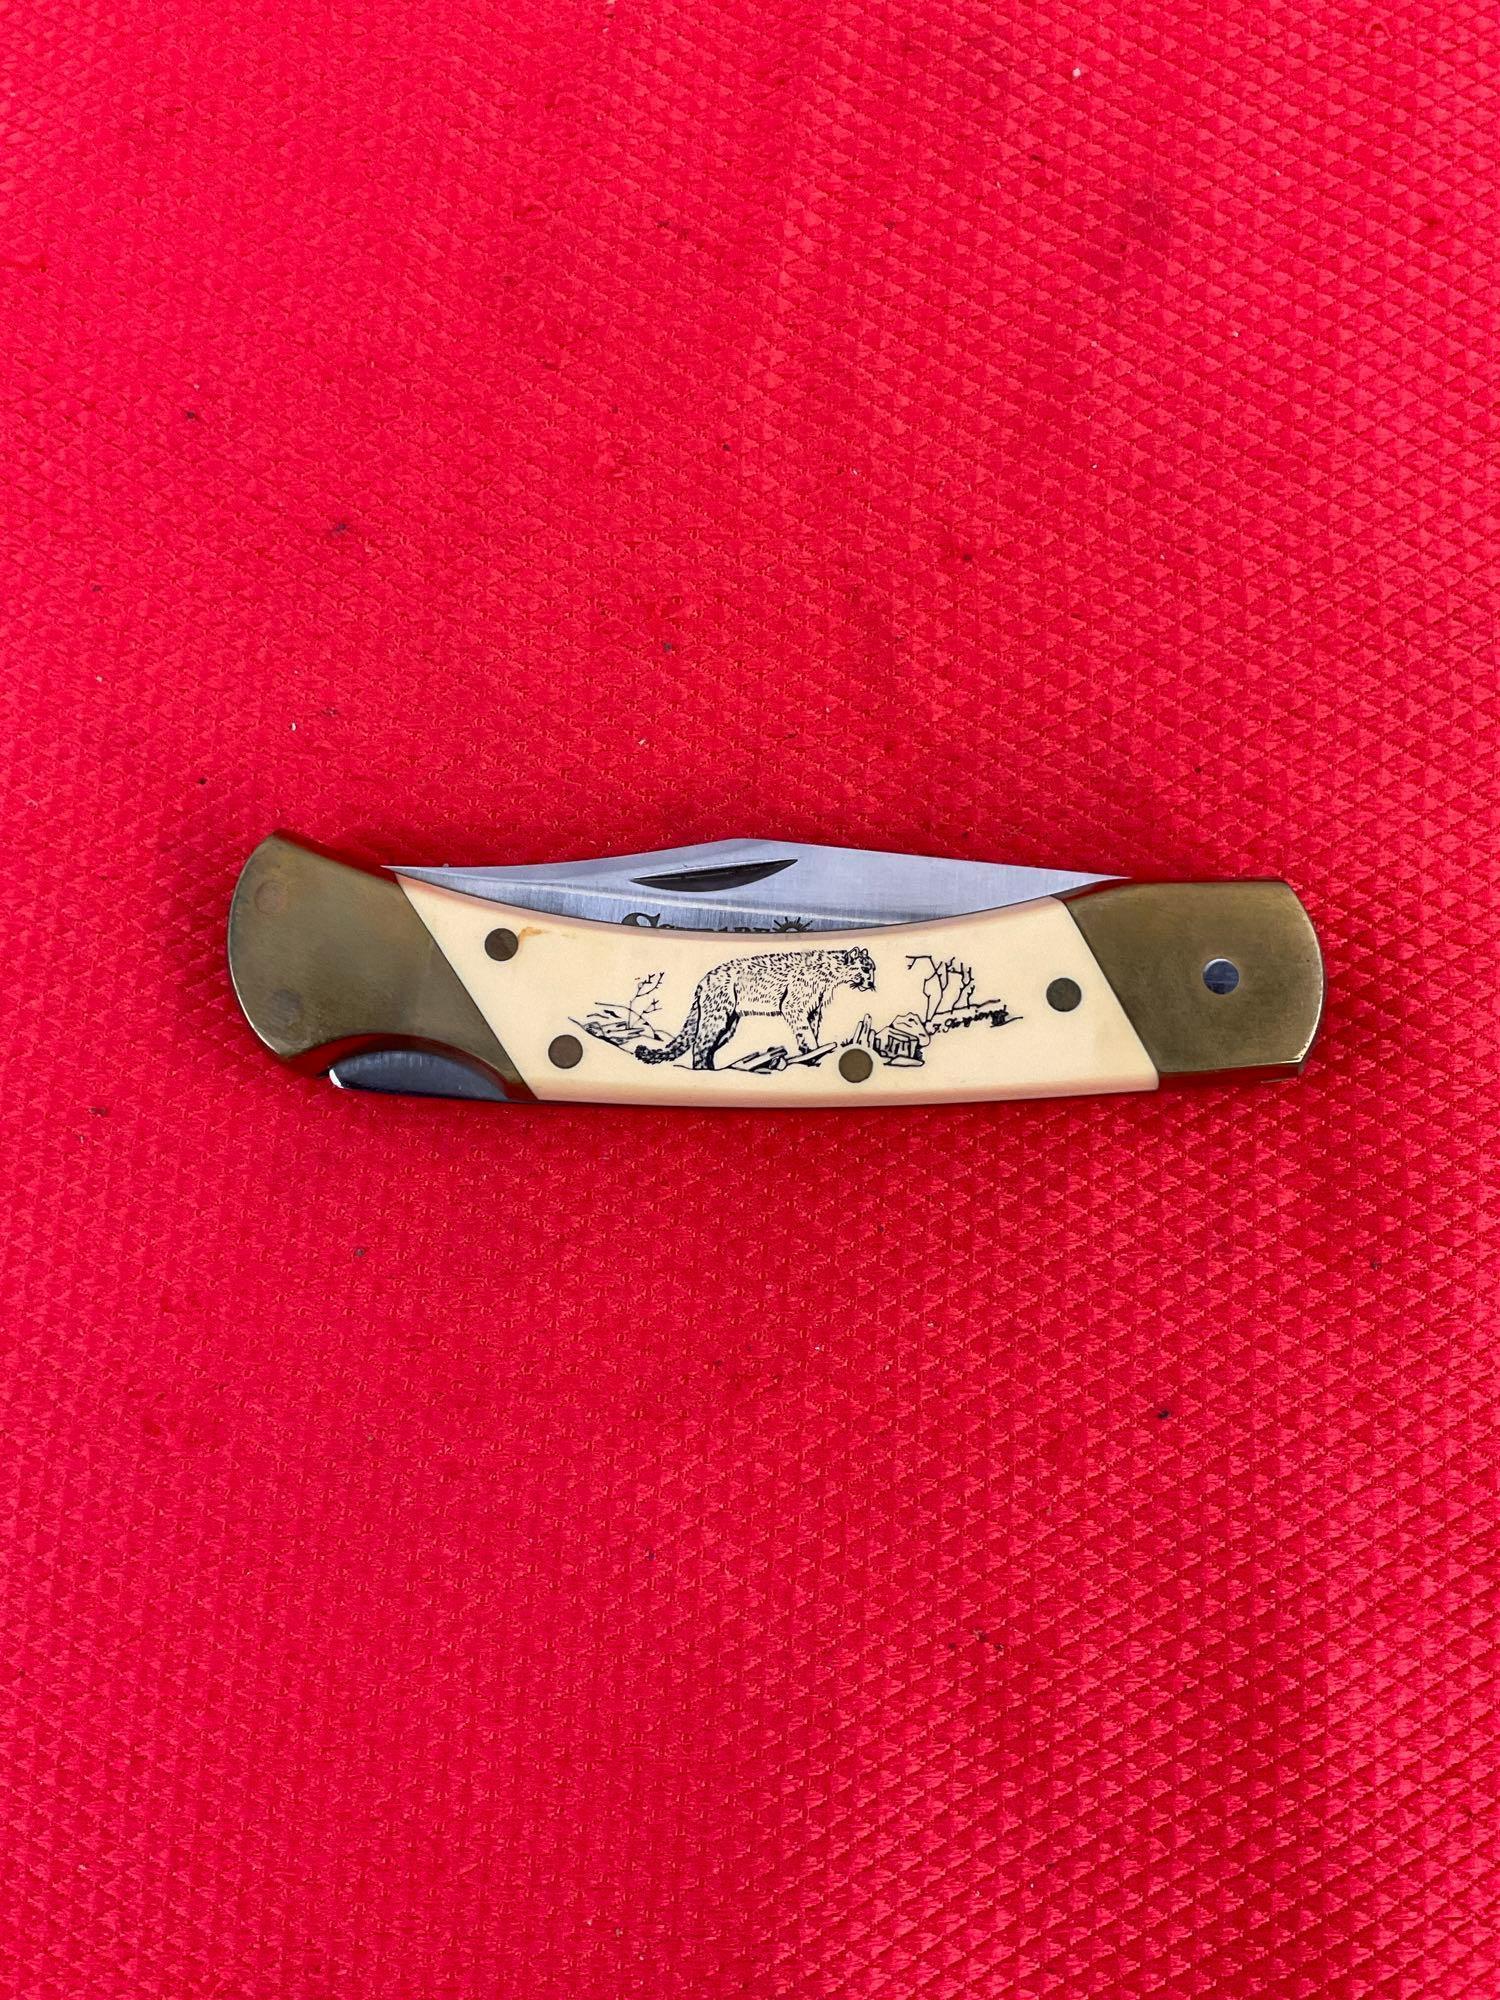 Vintage Schrade+ 3.5" Steel Folding Blade Pocket Knife Model 507SC w/ Etched Cougar & Sheath. See